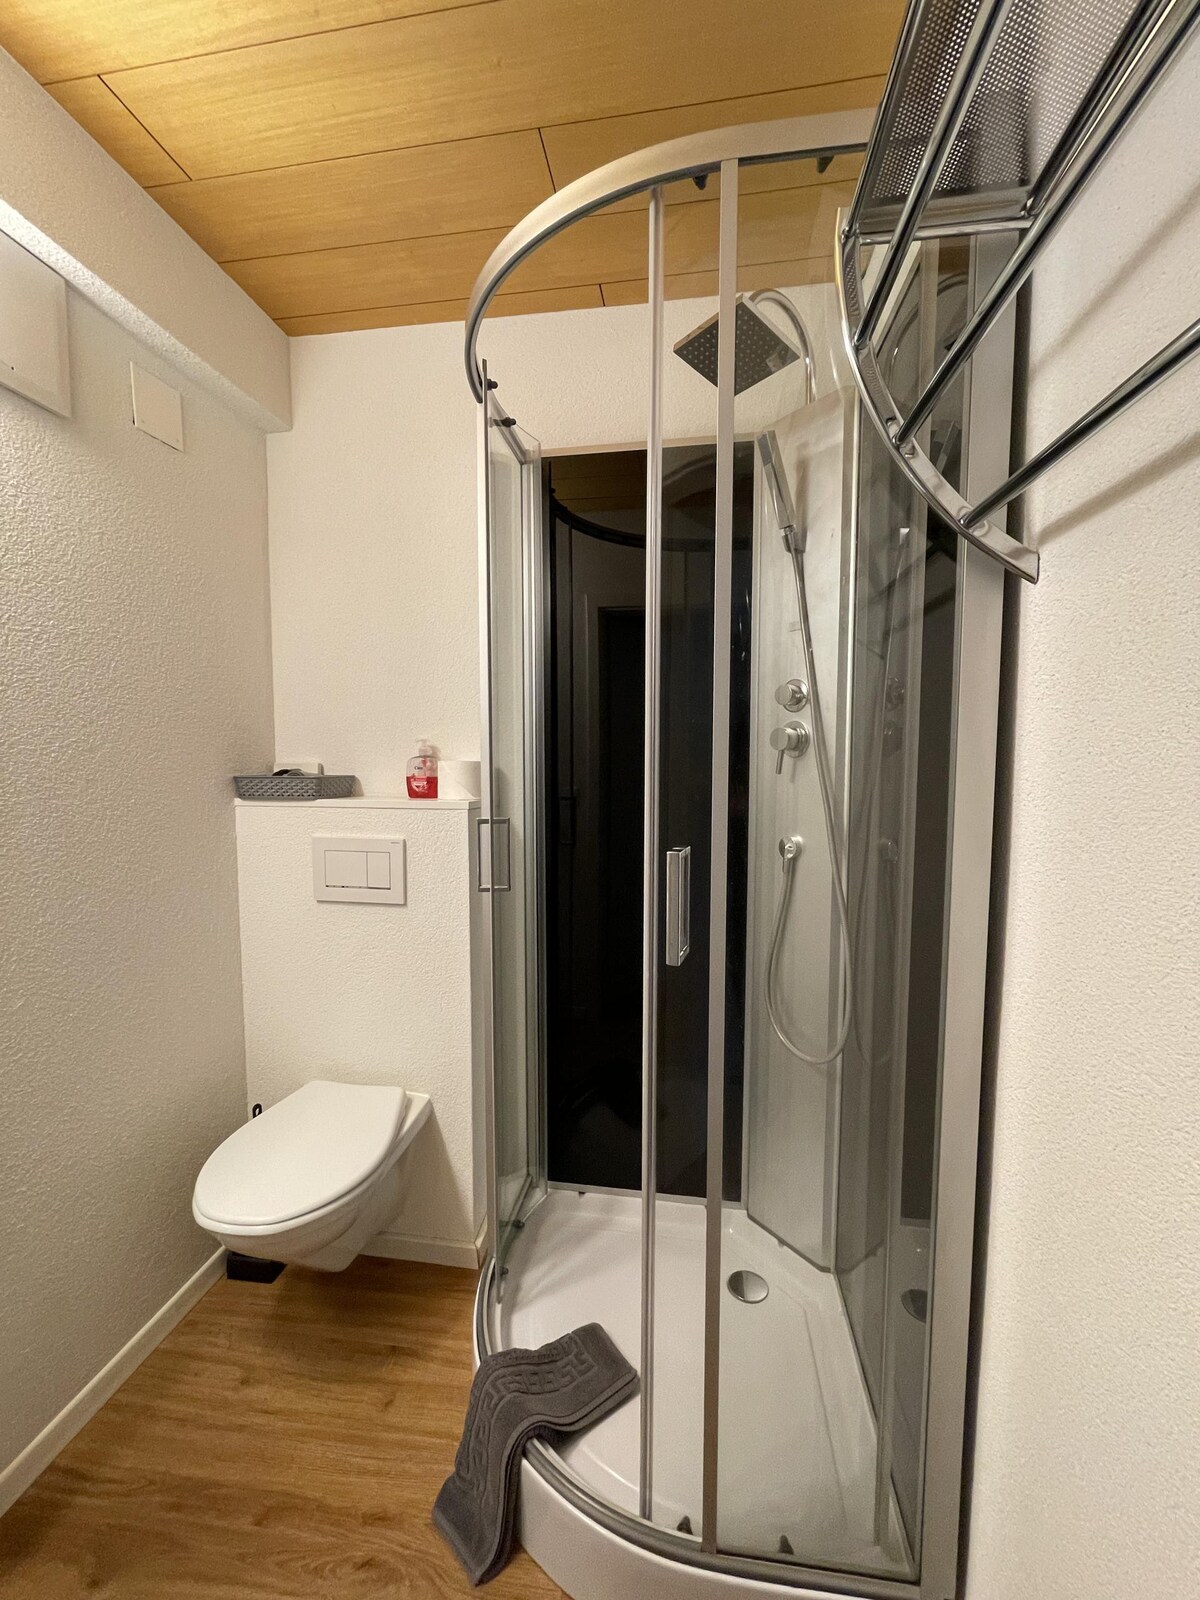 Altbau-家庭房-标准私人浴室-门牌